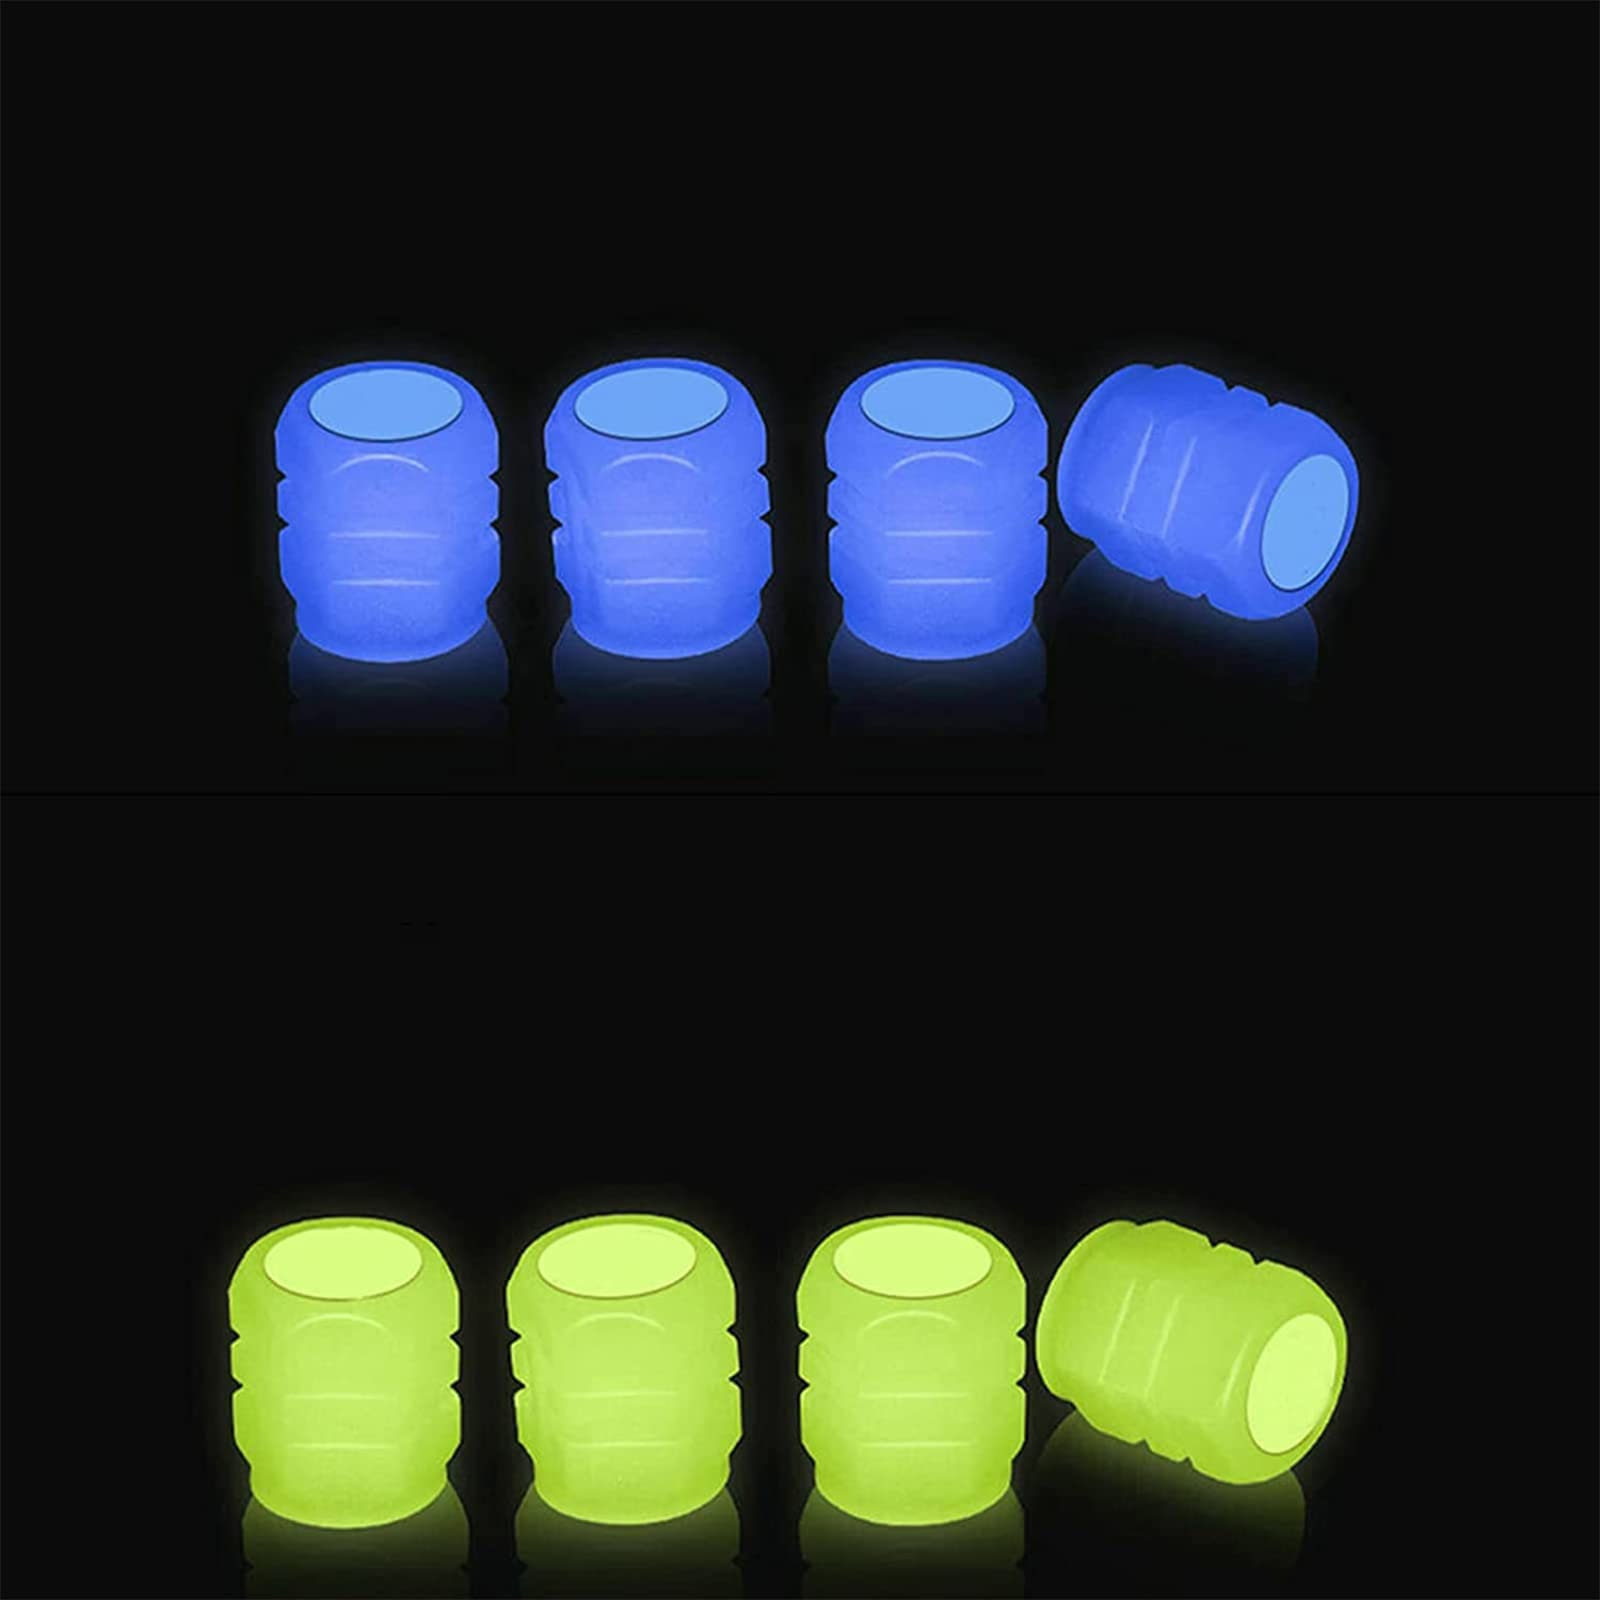 8 Stück Fluoreszierende Autoreifen Ventilkappen,Allgemeine Fluoreszierende Reifen Ventilkappen Fahrrad Auto Beschriftet Fashion Stem Cover für Auto,Motorräder,Fahrrad Glowing in Dark(Blau Gelb) von AnQuipet